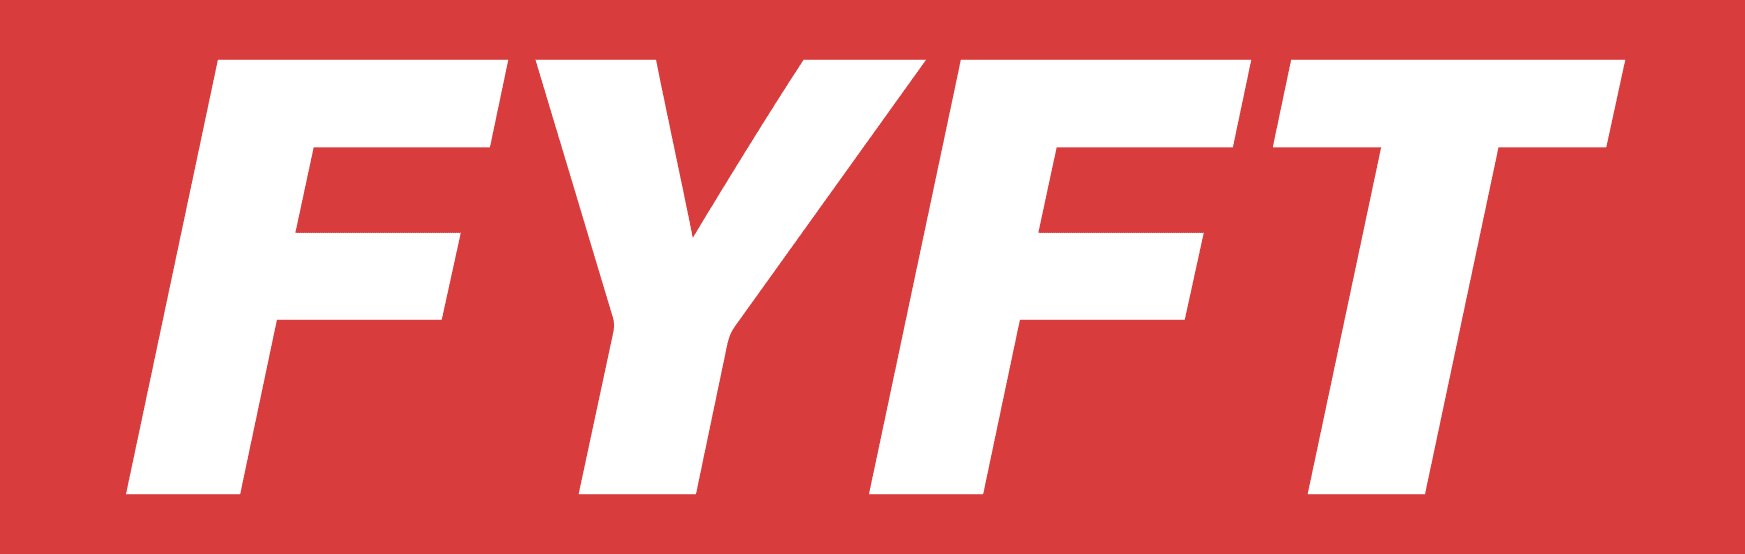 FYFT - logo